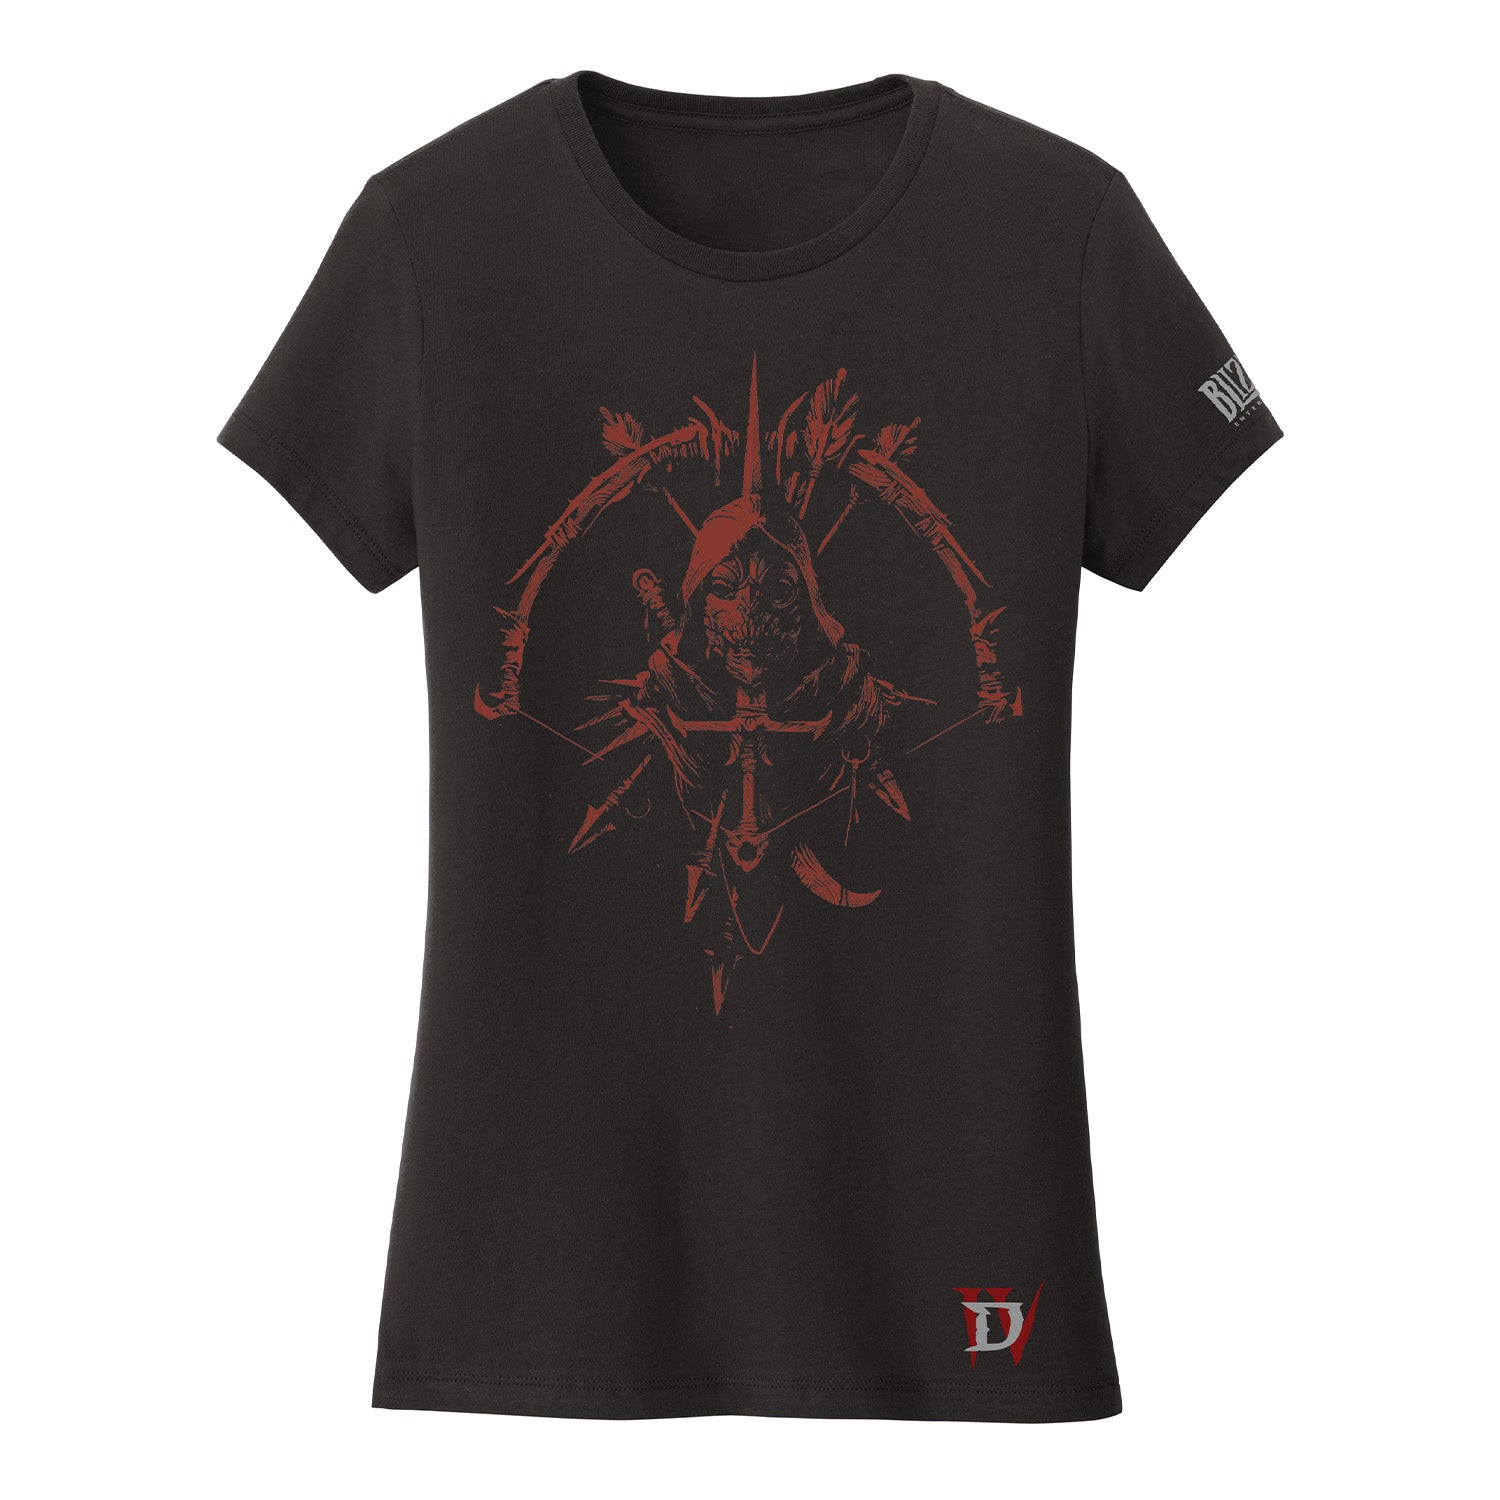 Diablo IV Rogue Women's Black T-Shirt - Front View